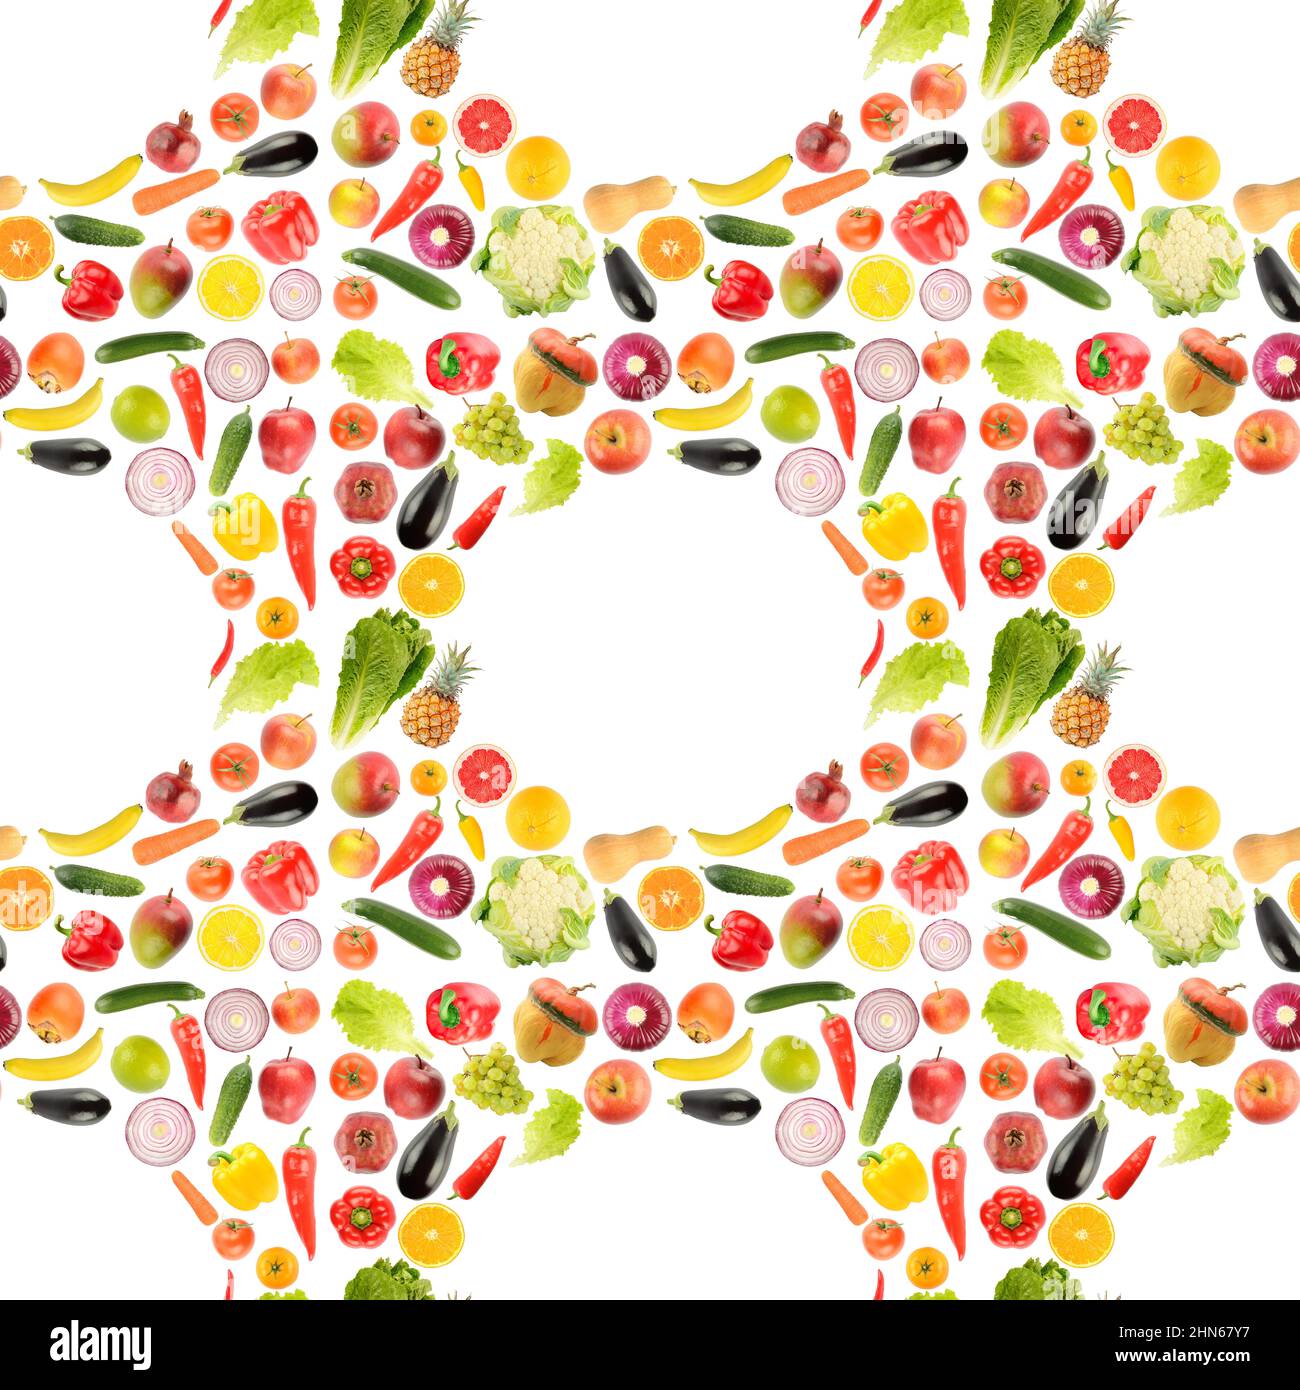 Motif sans couture provenant d'un grand nombre de fruits et légumes frais isolés sur fond blanc. Banque D'Images